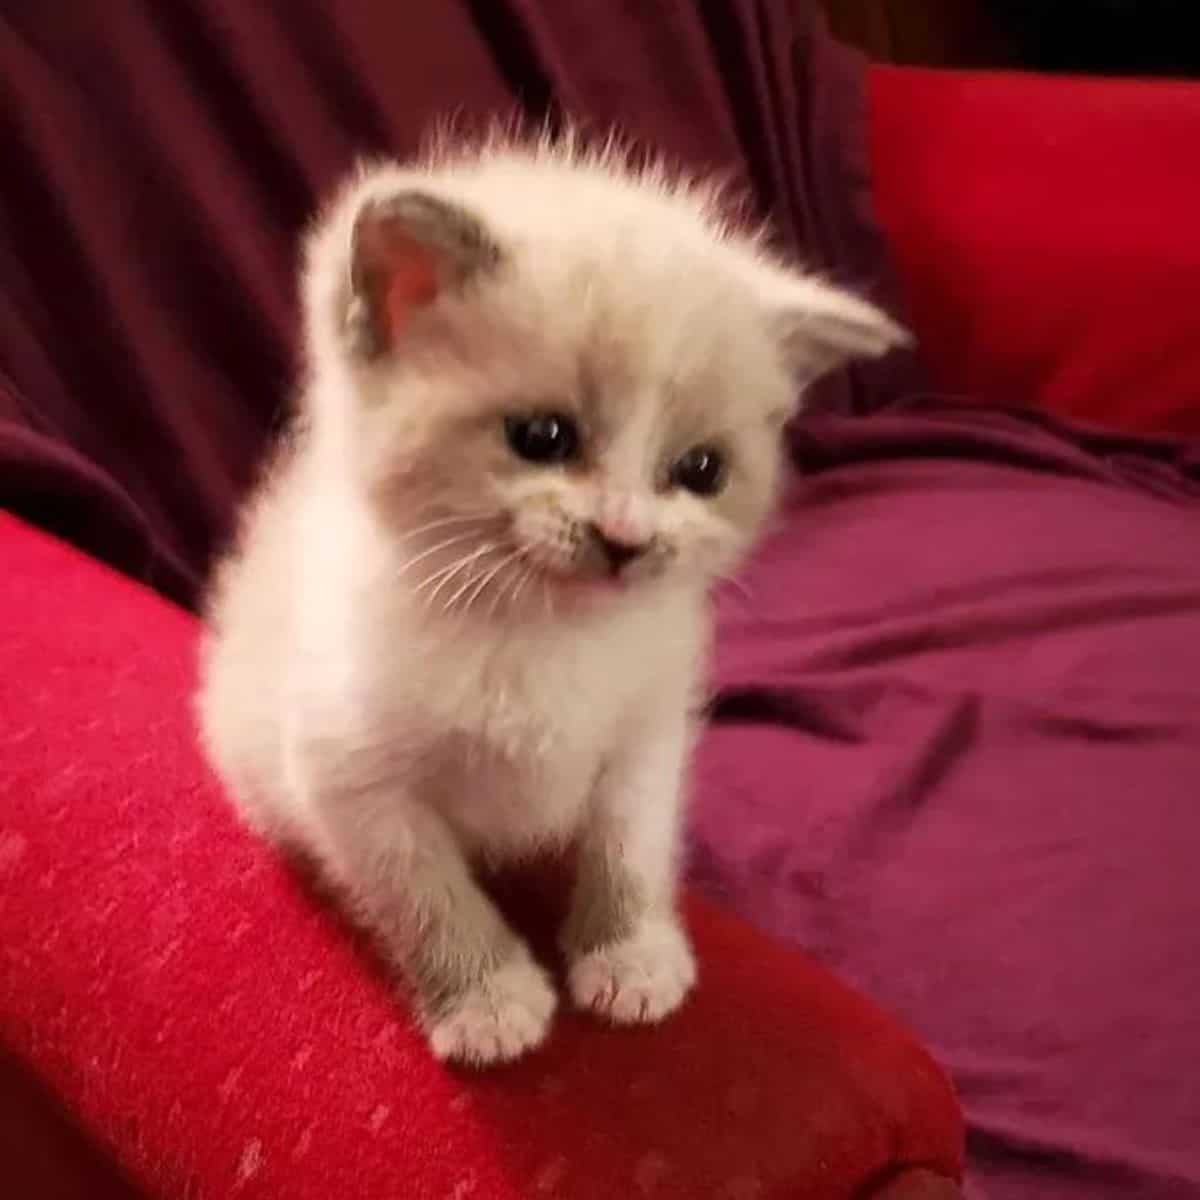 viral kitten named blossom